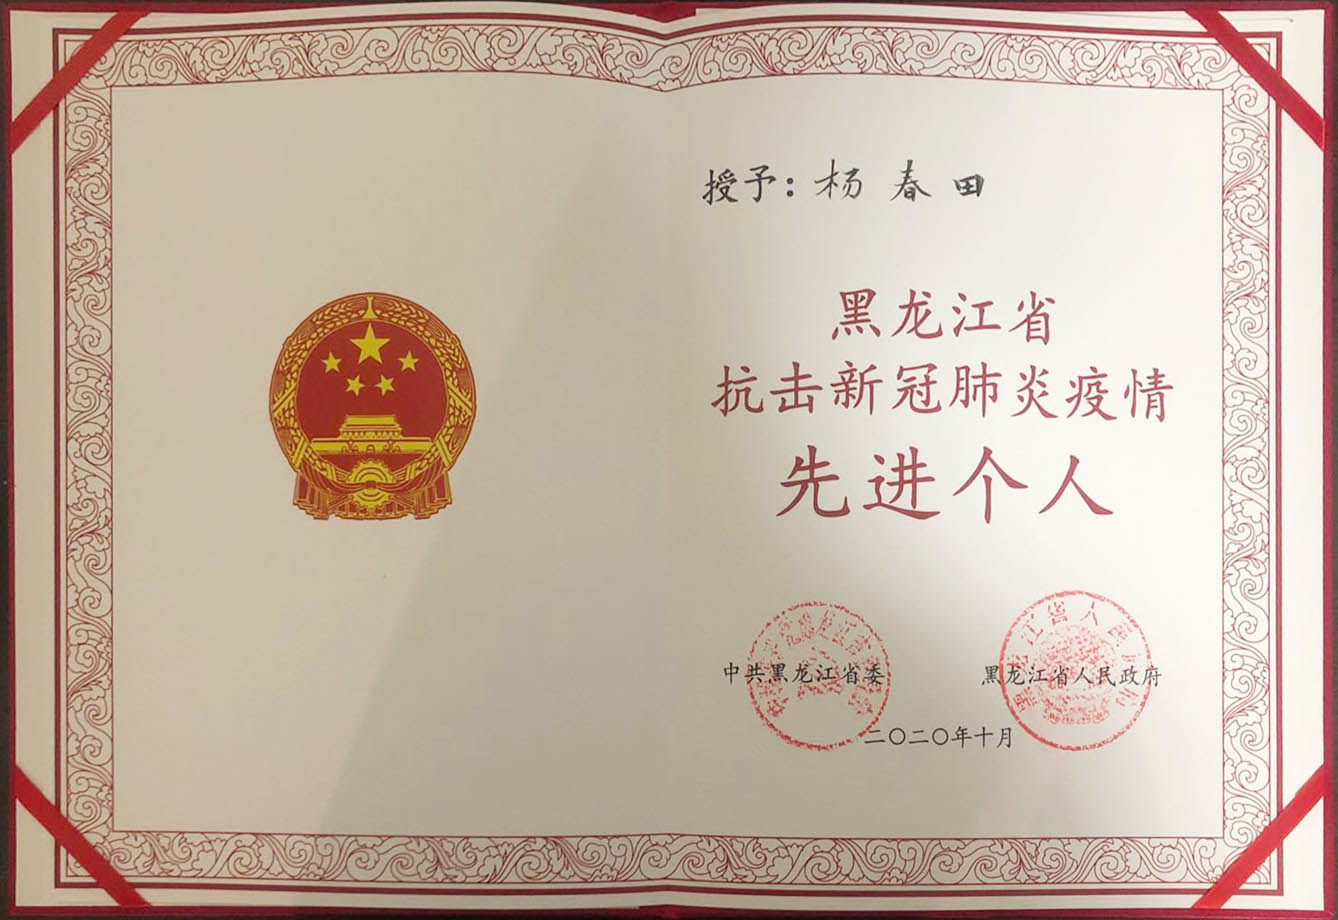 我校两名教师荣获黑龙江省抗击新冠肺炎疫情先进个人荣誉称号